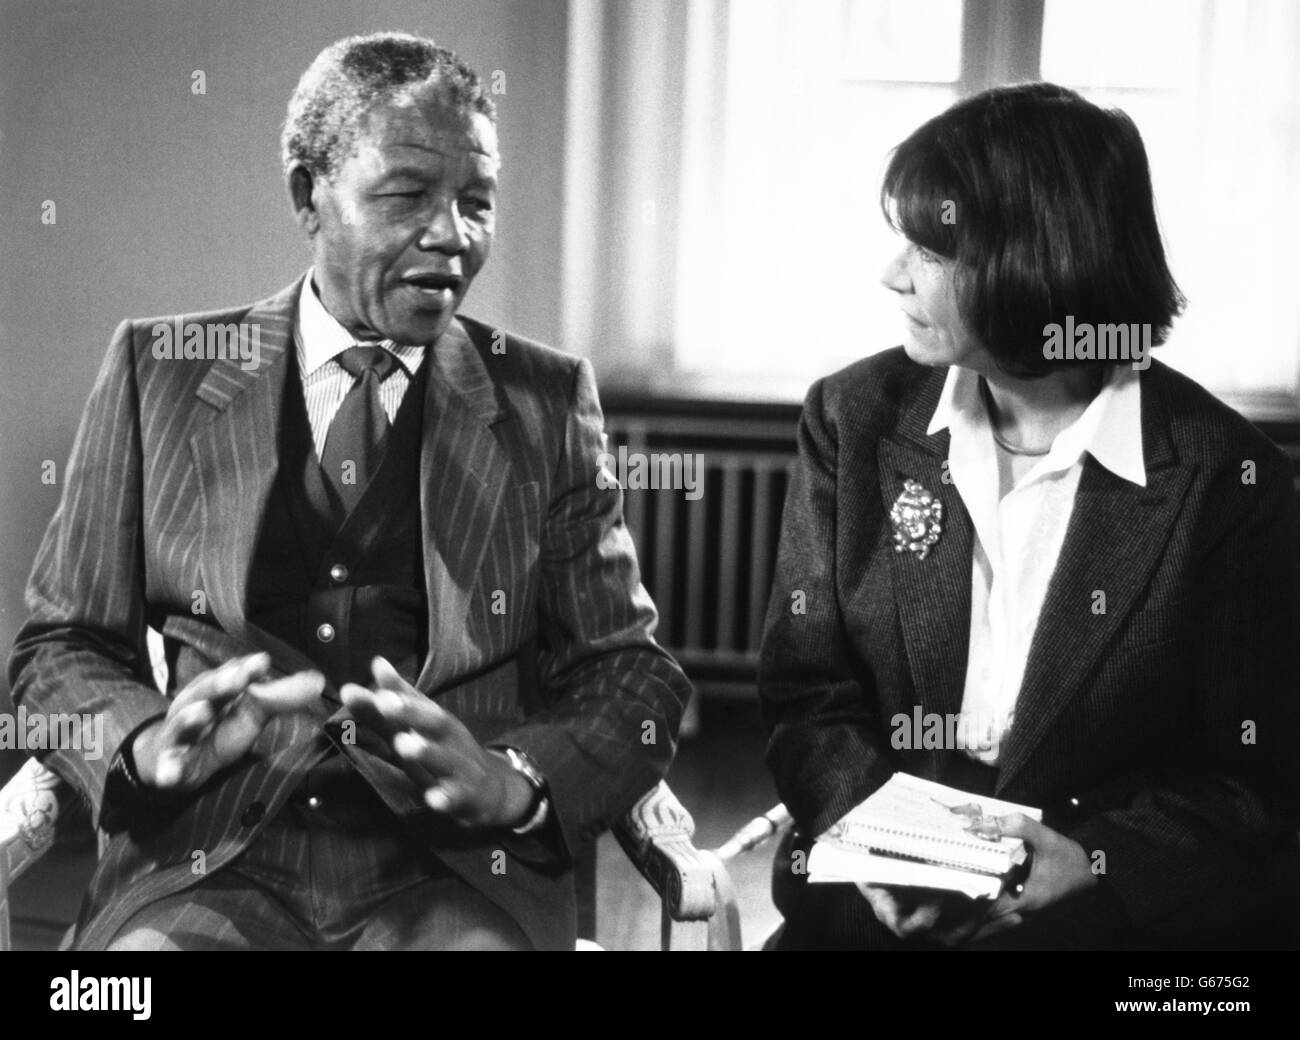 Joan Bakewell, presentatore della BBC TV, parla a Nelson Mandela del suo viaggio personale e spirituale che lo aveva sostenuto durante i suoi anni di prigionia e offre la sua visione del futuro durante lo show televisivo "Heart of the Matter". Foto Stock